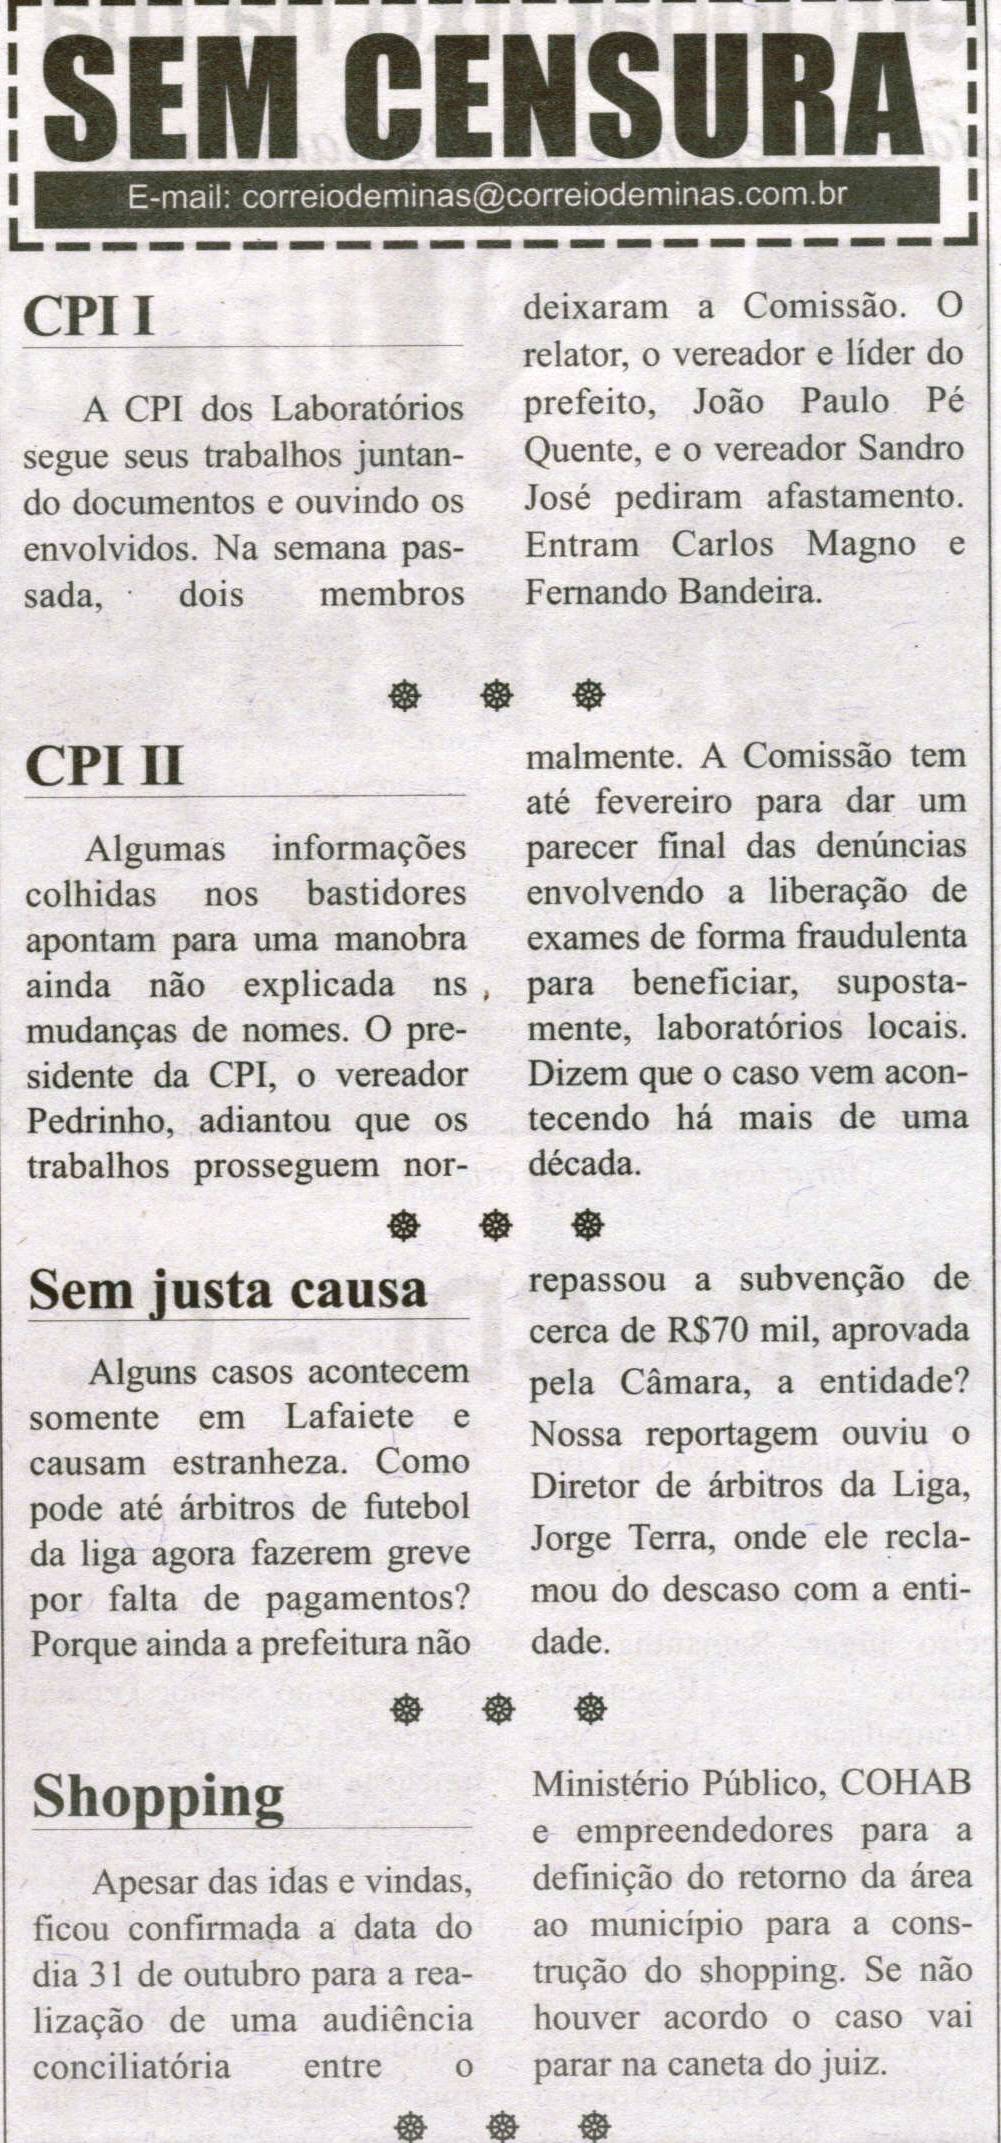 CPI I; CPI II; Sem justa causa; Shopping. Correio de Minas, Conselheiro Lafaiete, 26 out. 2013, Sem Censura, p. 3.